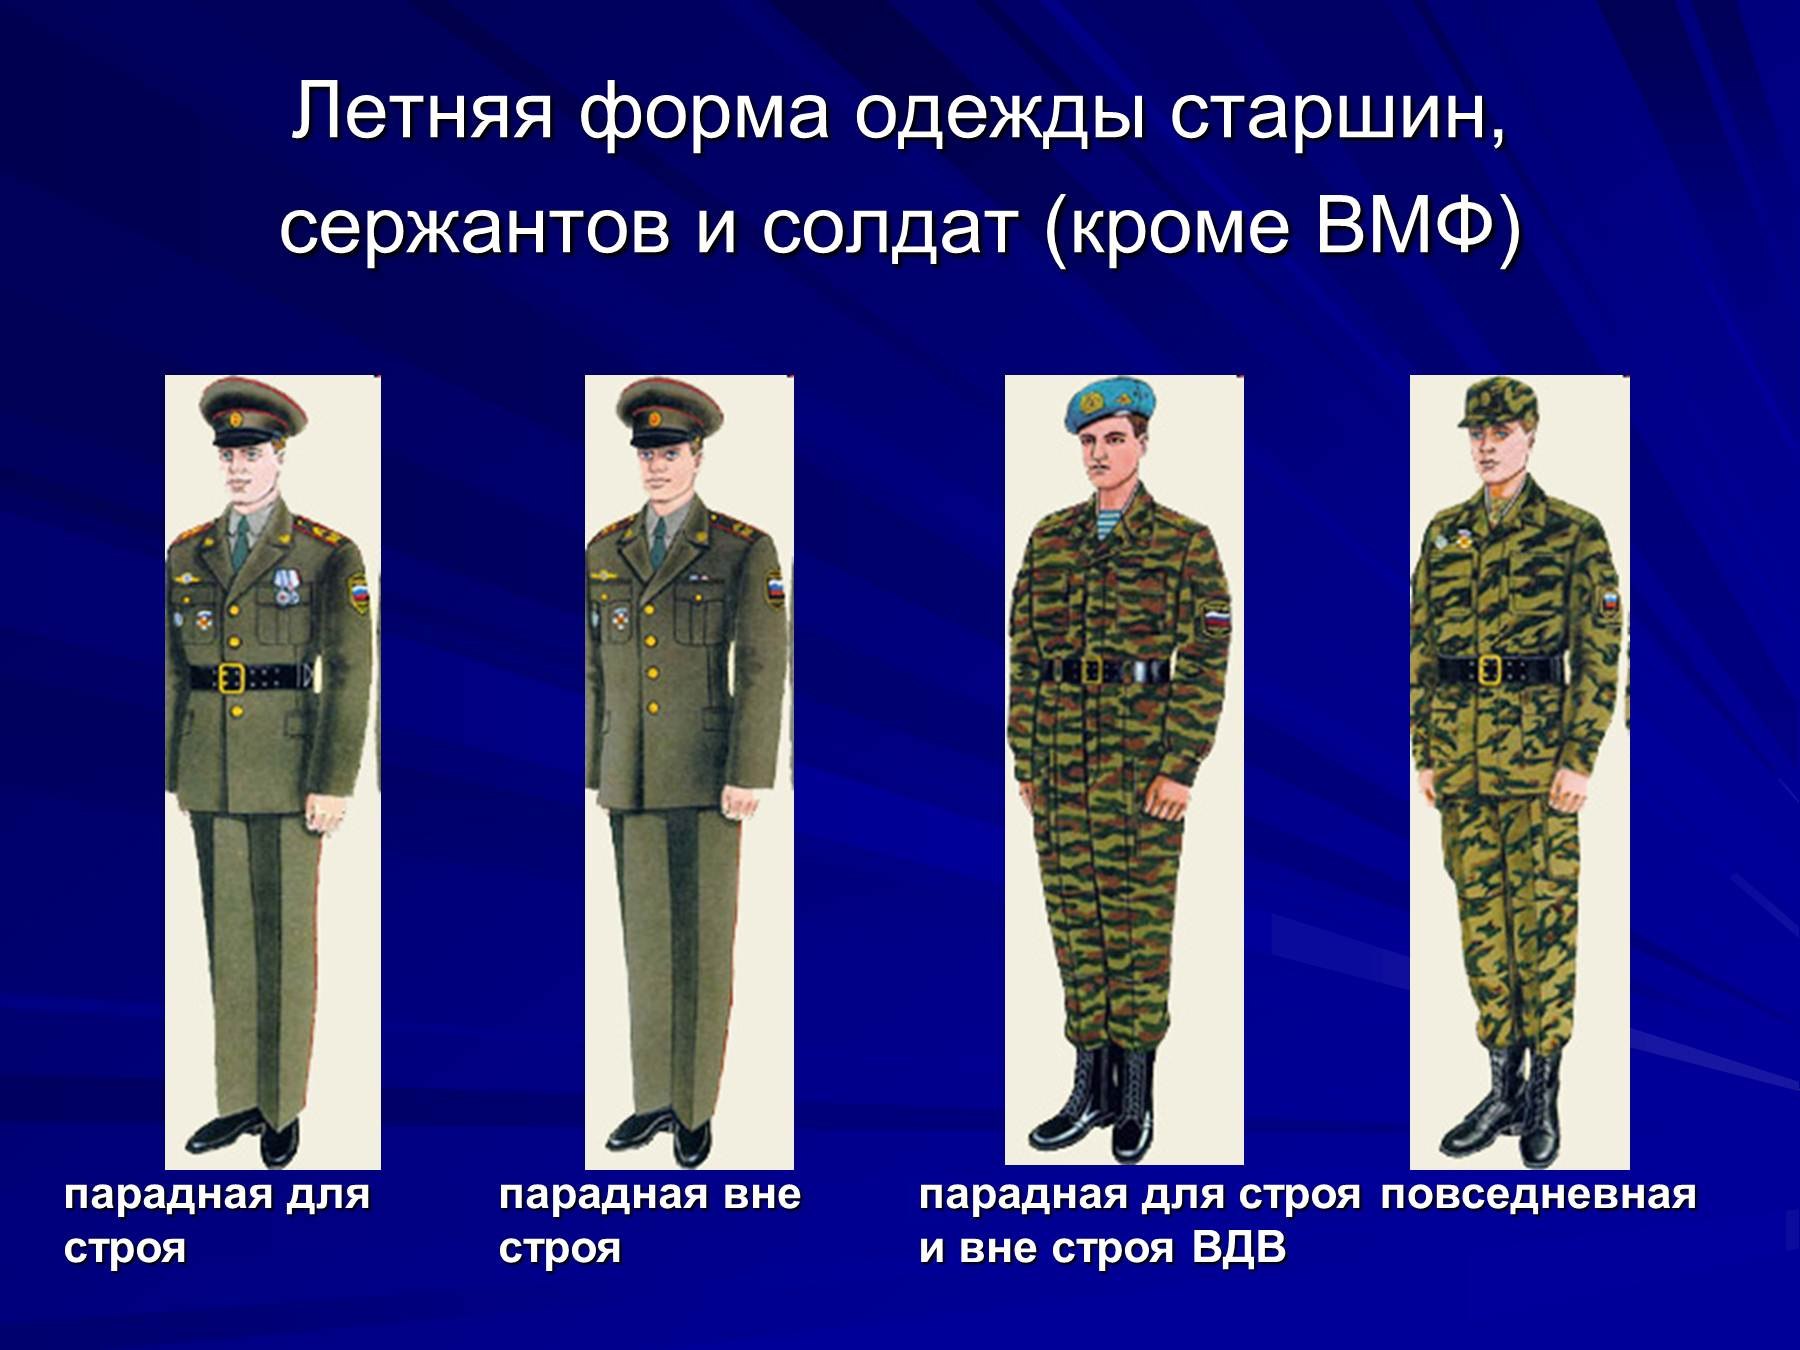 Летняя форма старшин сержантов ВМФ